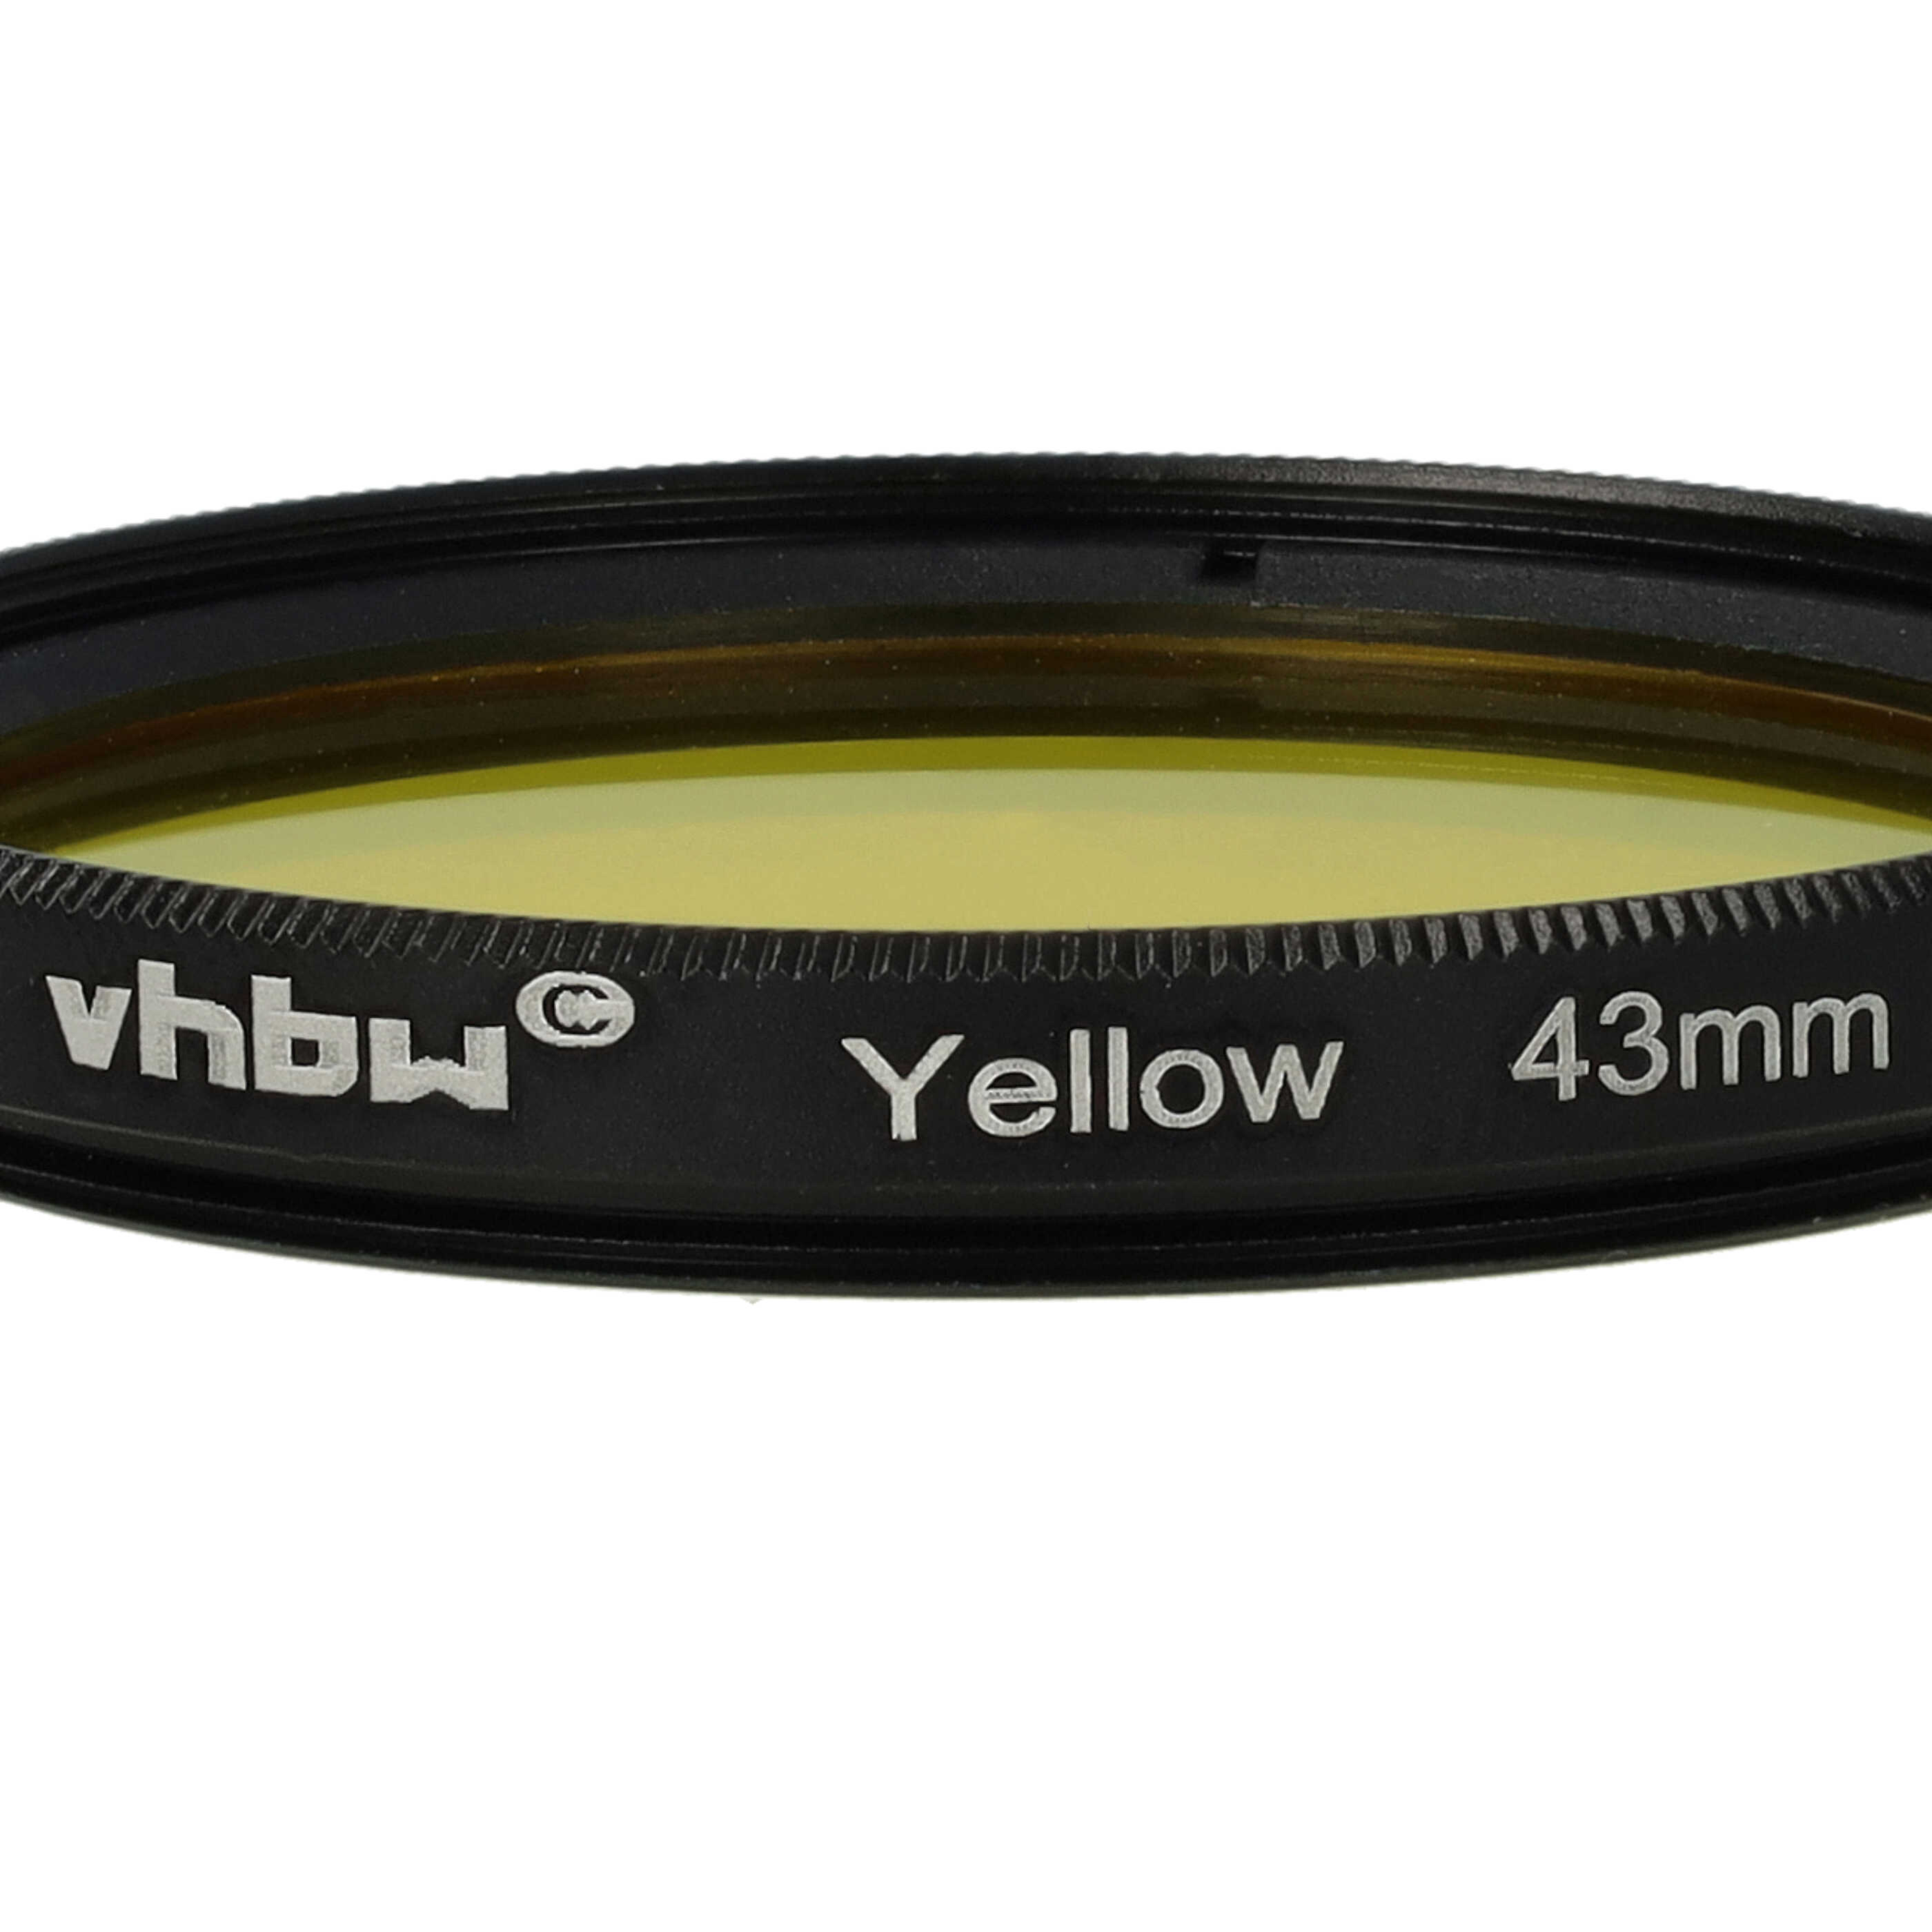 Farbfilter gelb passend für Kamera Objektive mit 43 mm Filtergewinde - Gelbfilter